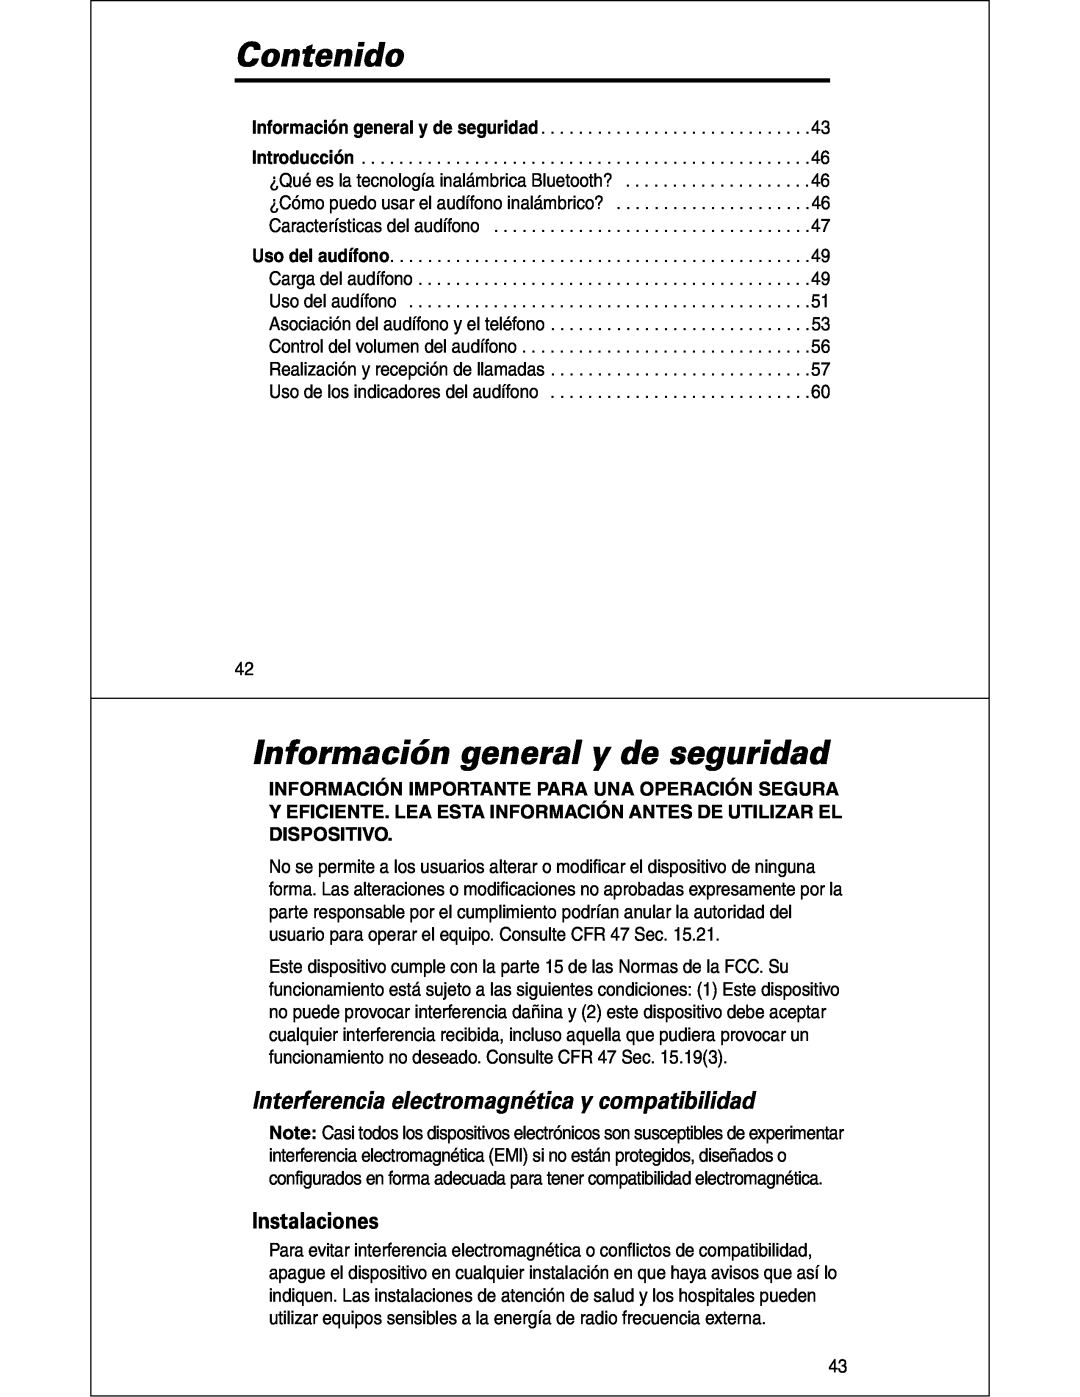 Motorola HS810 manual Contenido, Información general y de seguridad, Interferencia electromagnética y compatibilidad 